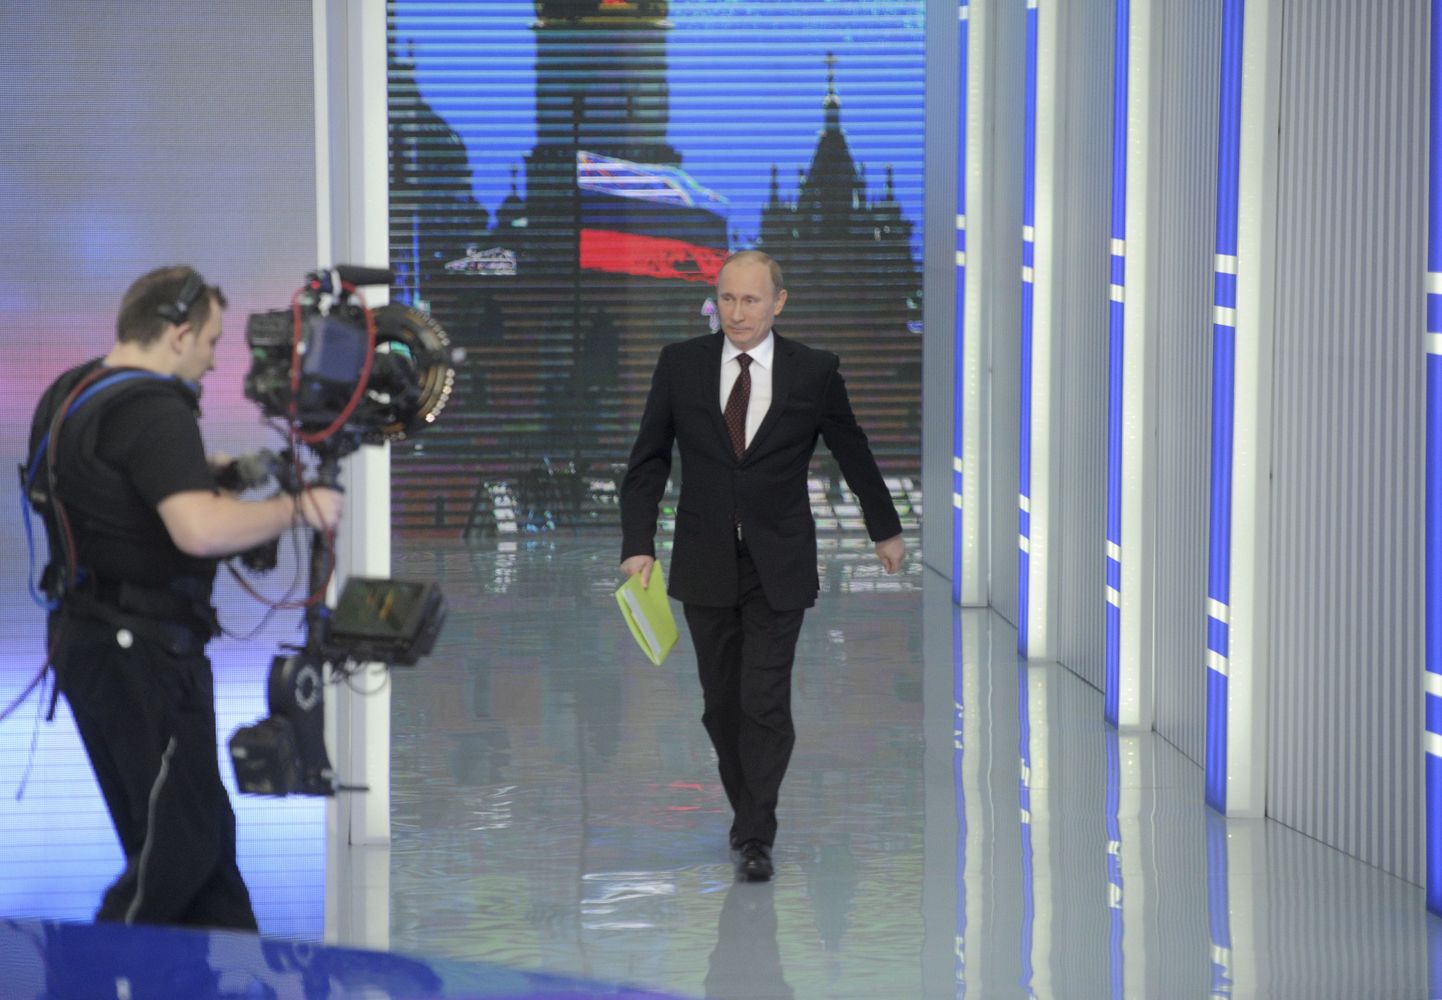 Läheb lahti! Putin saabub otse-eetri stuudiosse.